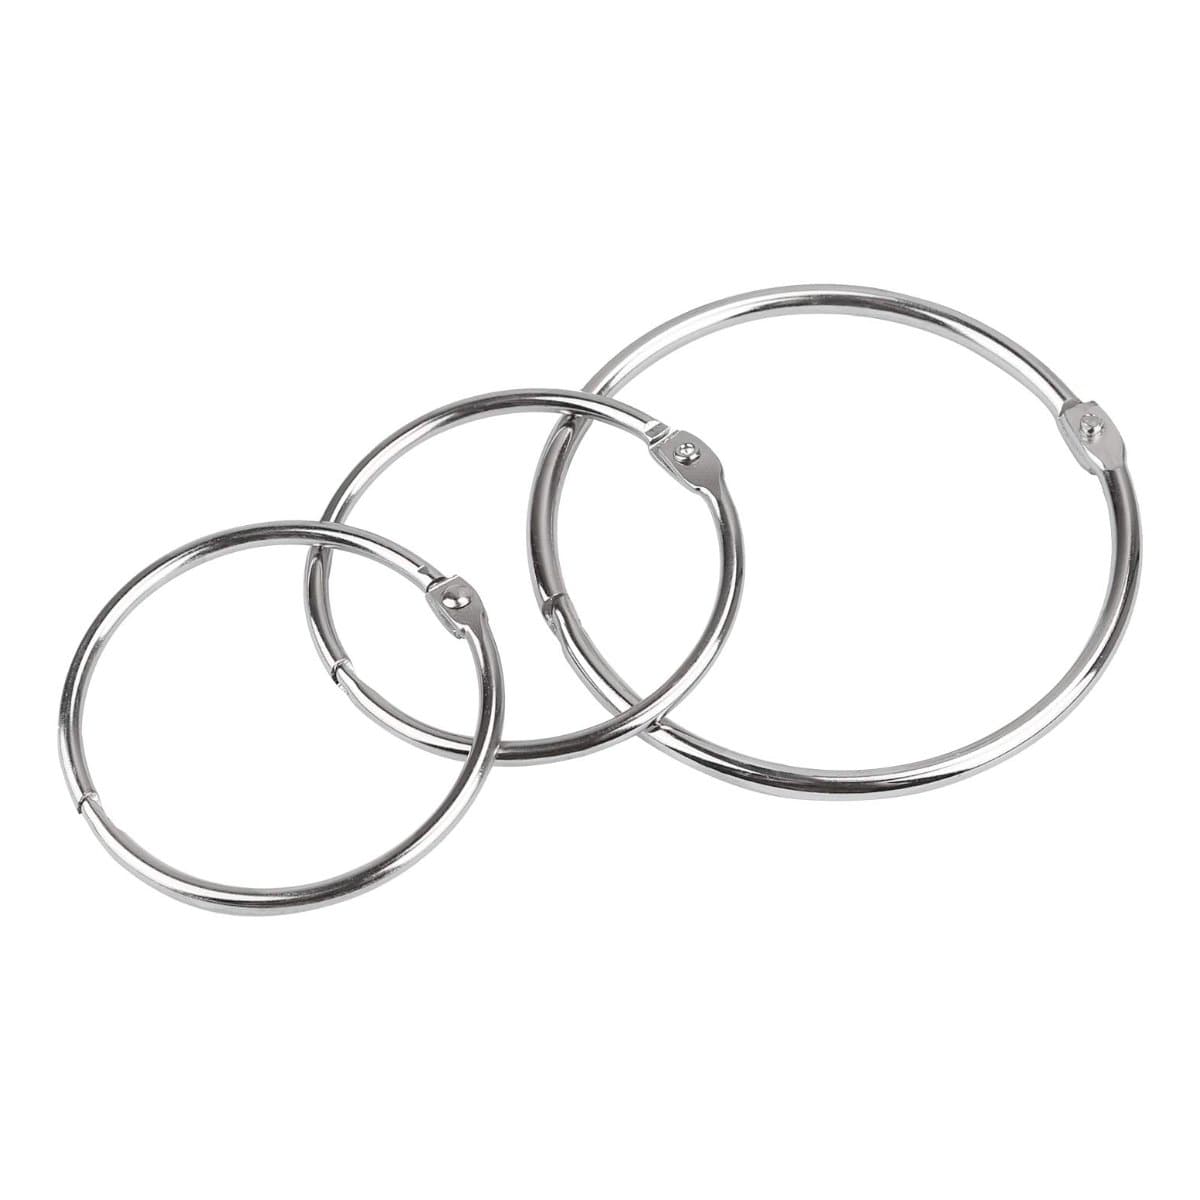 Metal Binder Rings, 20/pack, Nickel-Plated